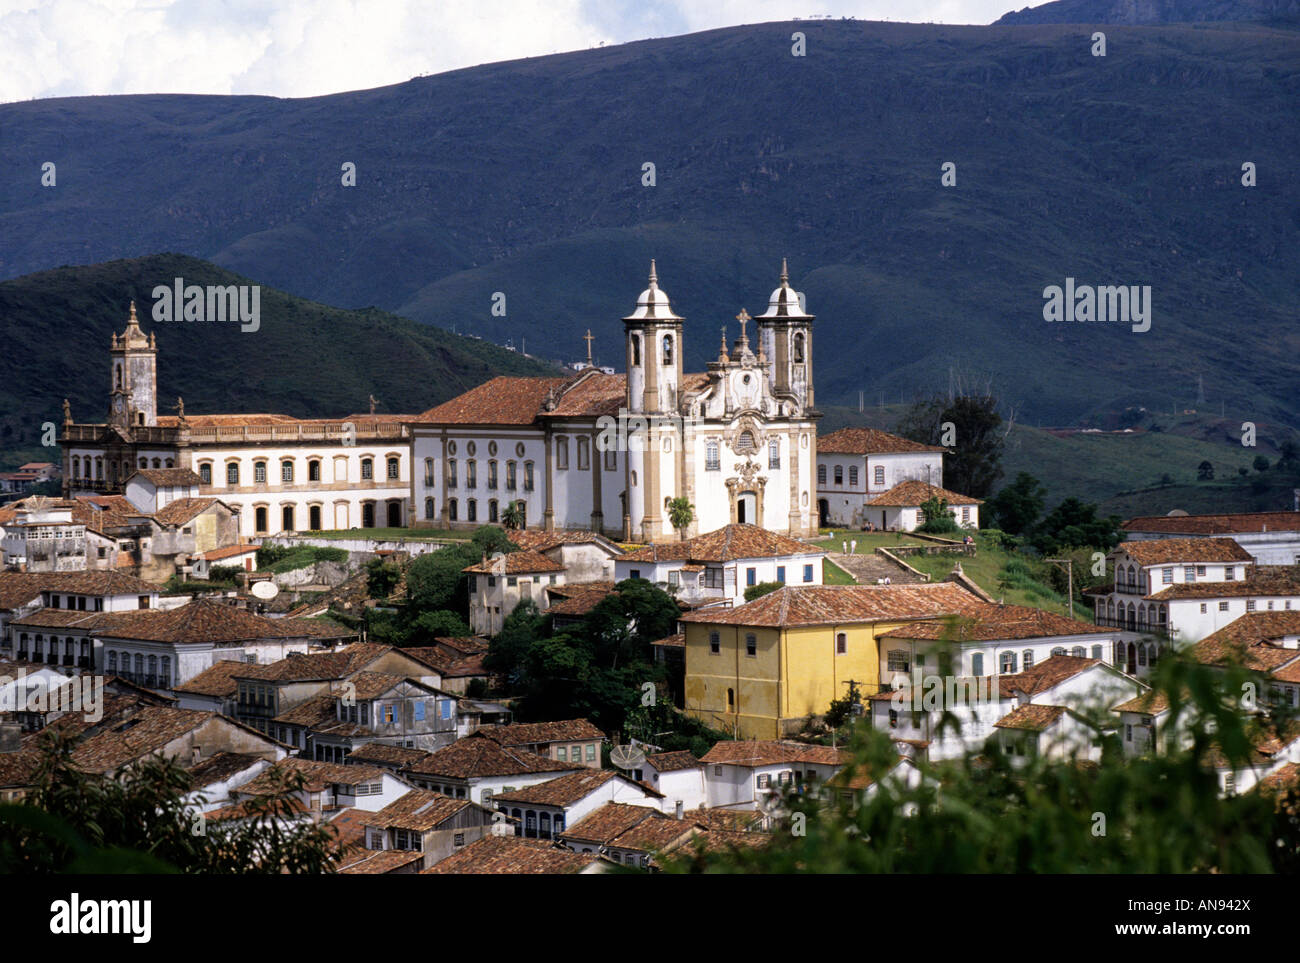 Church of Our Lady of Mount Carmel, ouro preto, Minas Gerais, Brazil Stock Photo